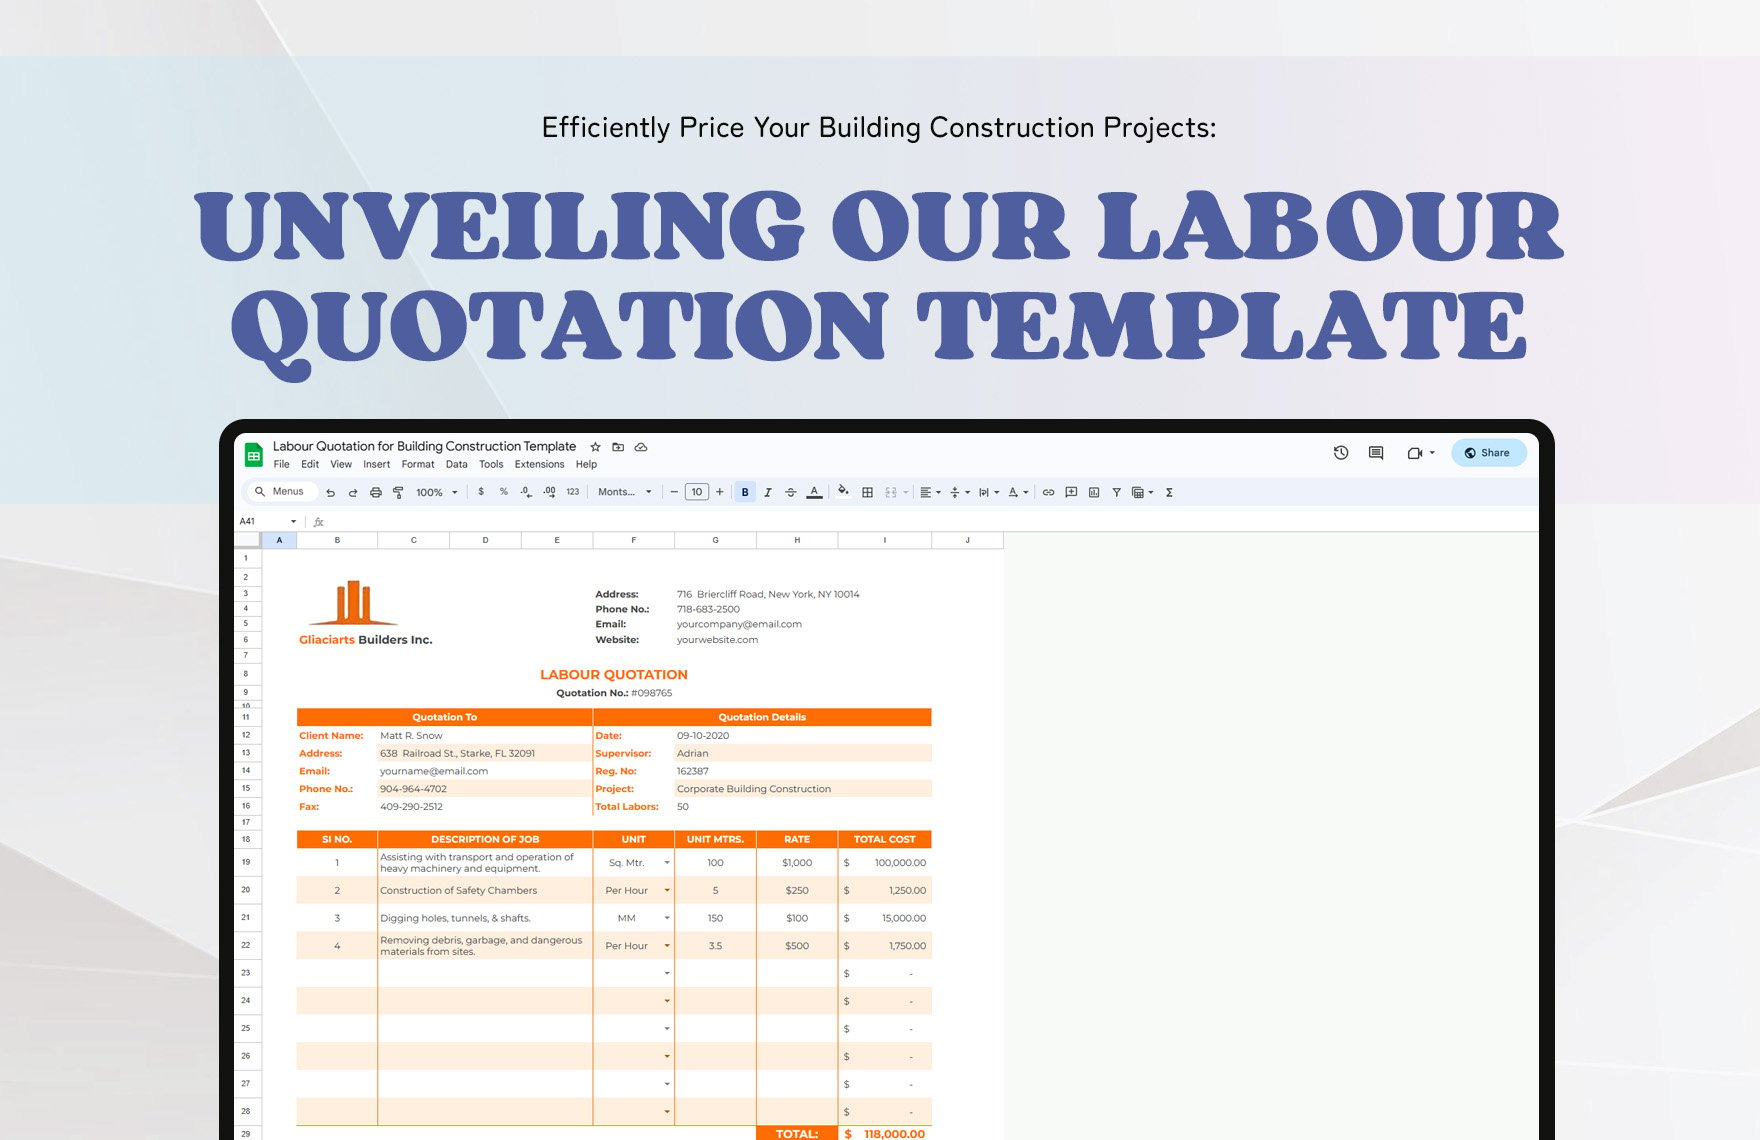 Labour Quotation for Building Construction Template